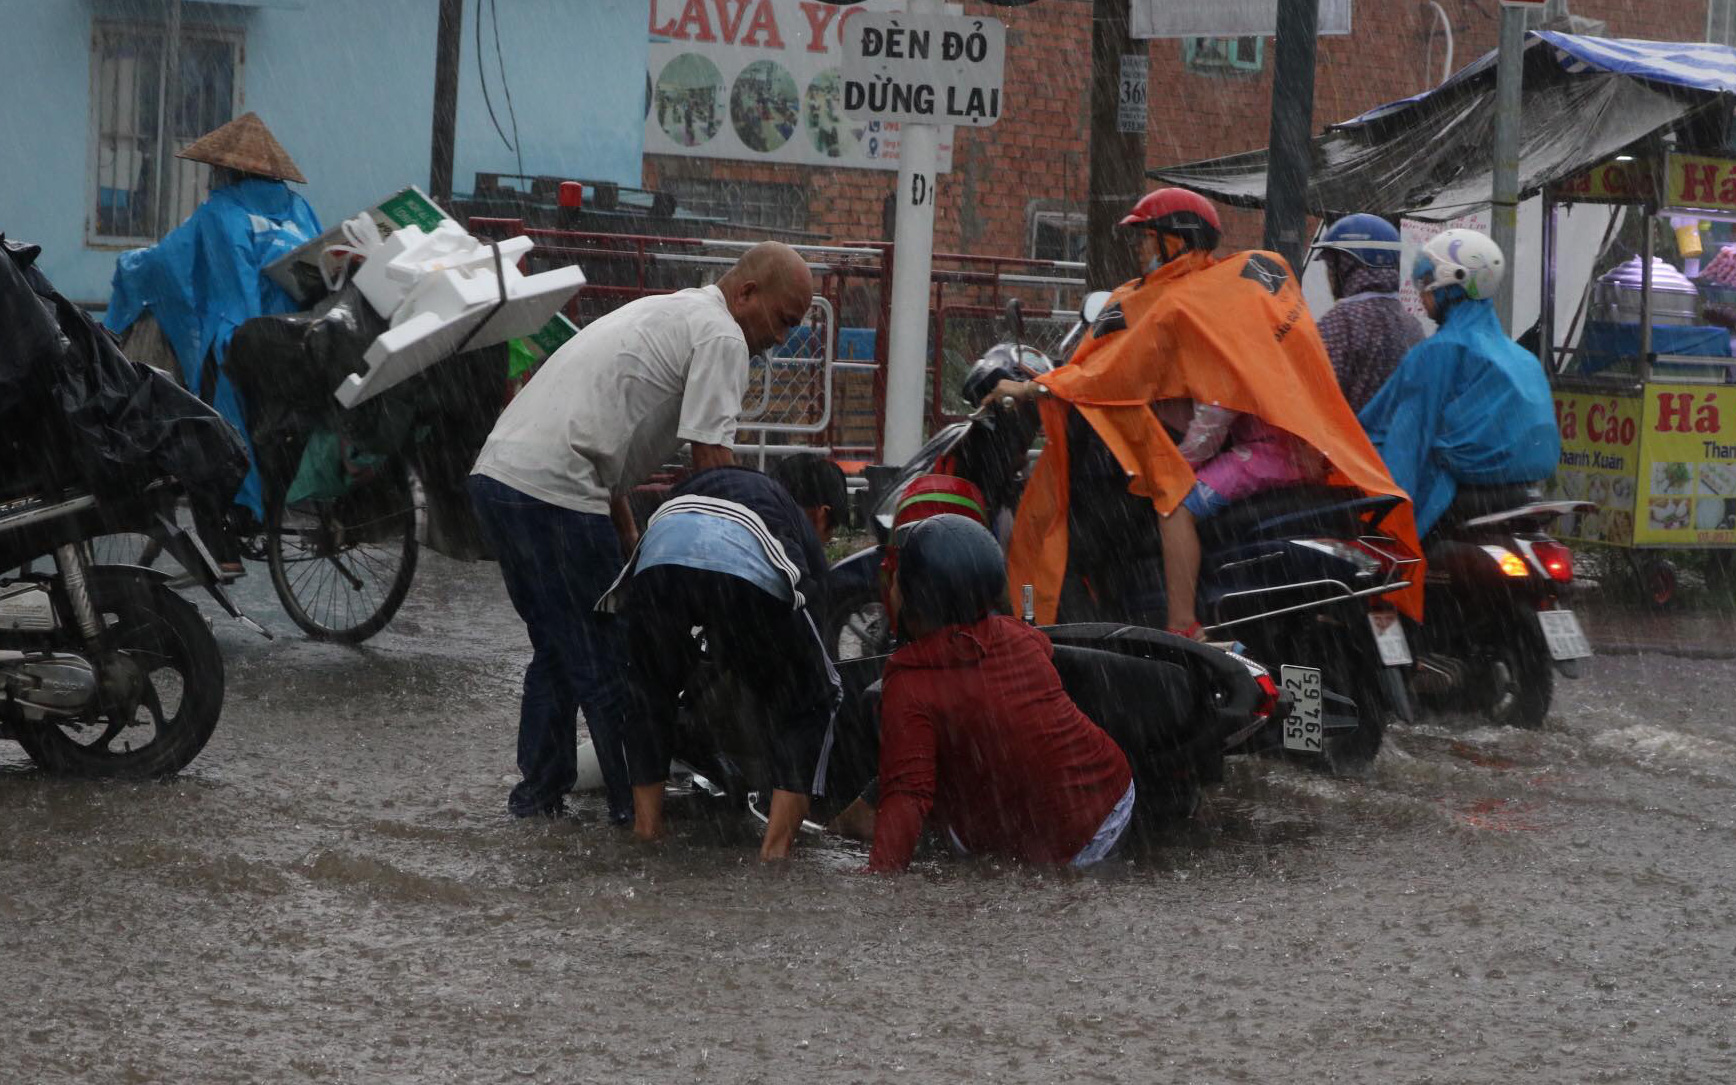 Flooding, congestion torment commuters as downpour batters Ho Chi Minh City